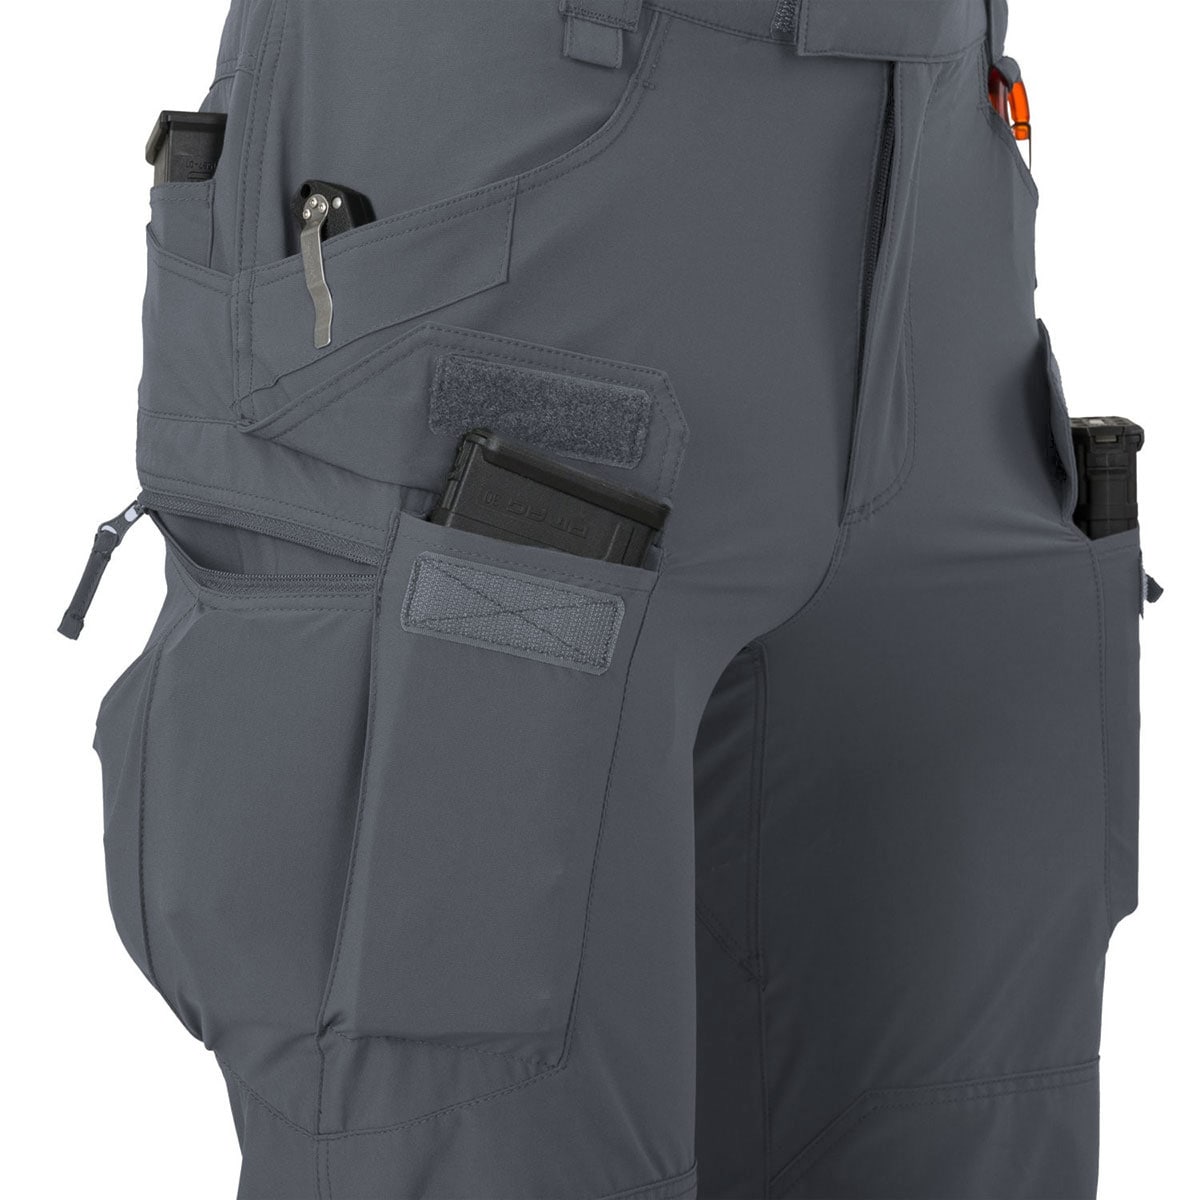 Spodnie Helikon OTP VersaStretch Lite - Shadow Grey